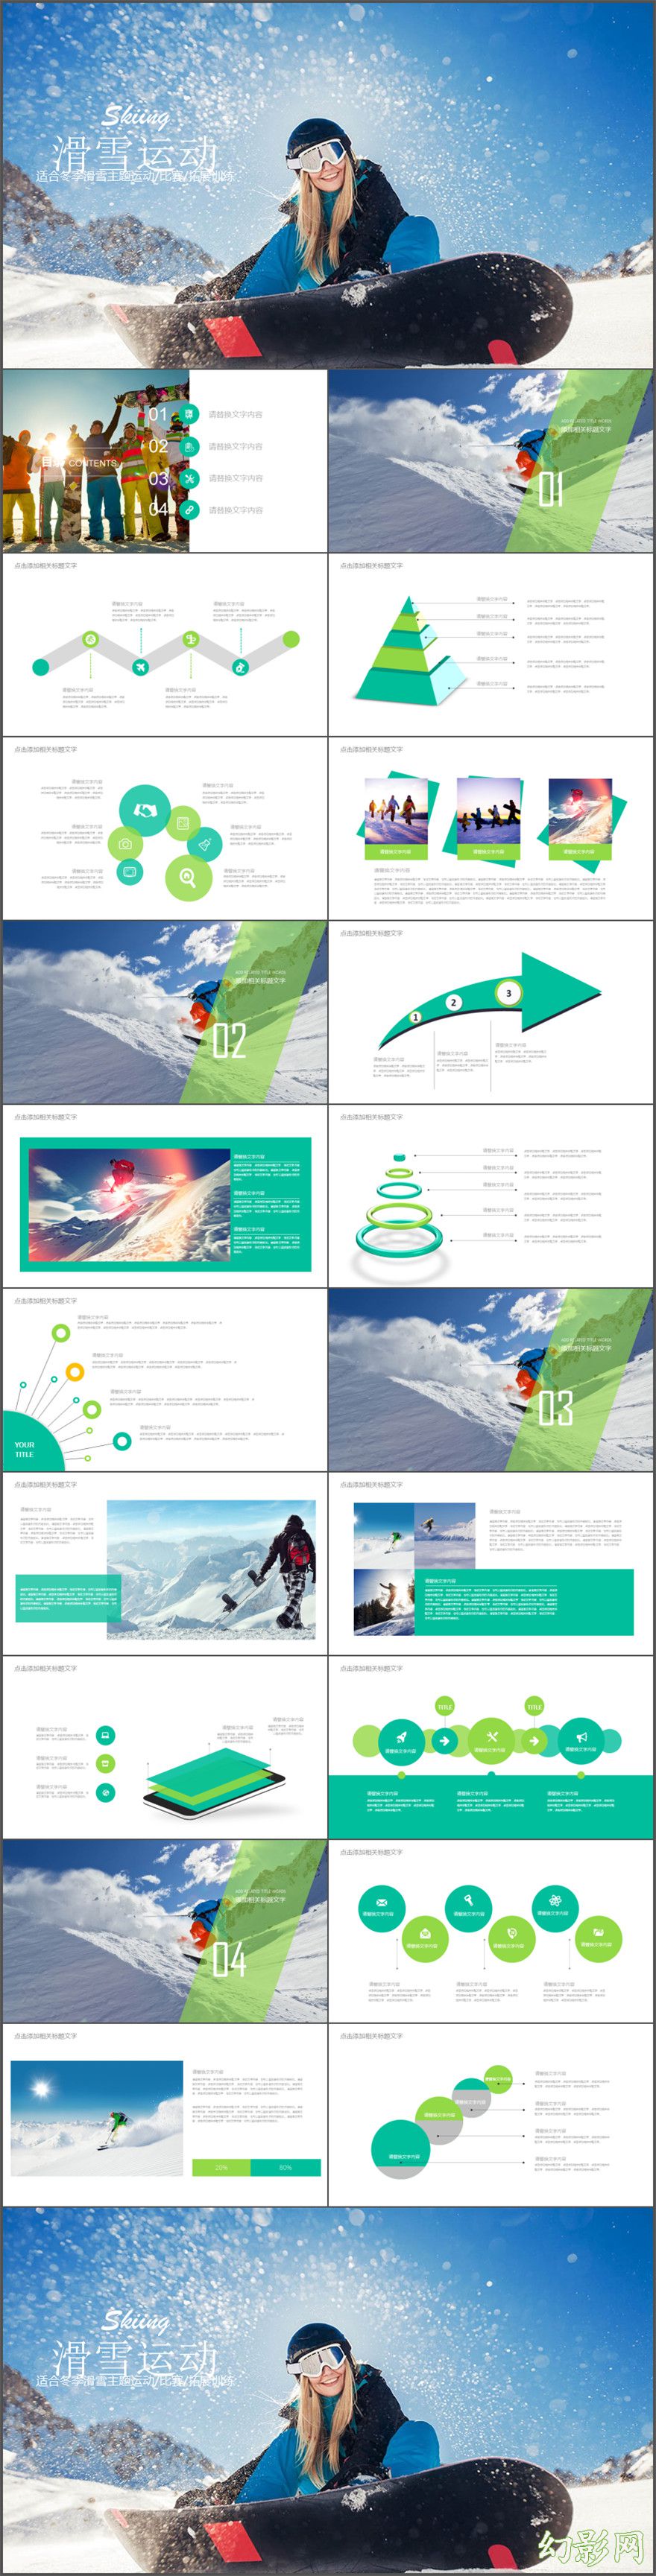 冬季体育运动 滑雪场 PPT模板